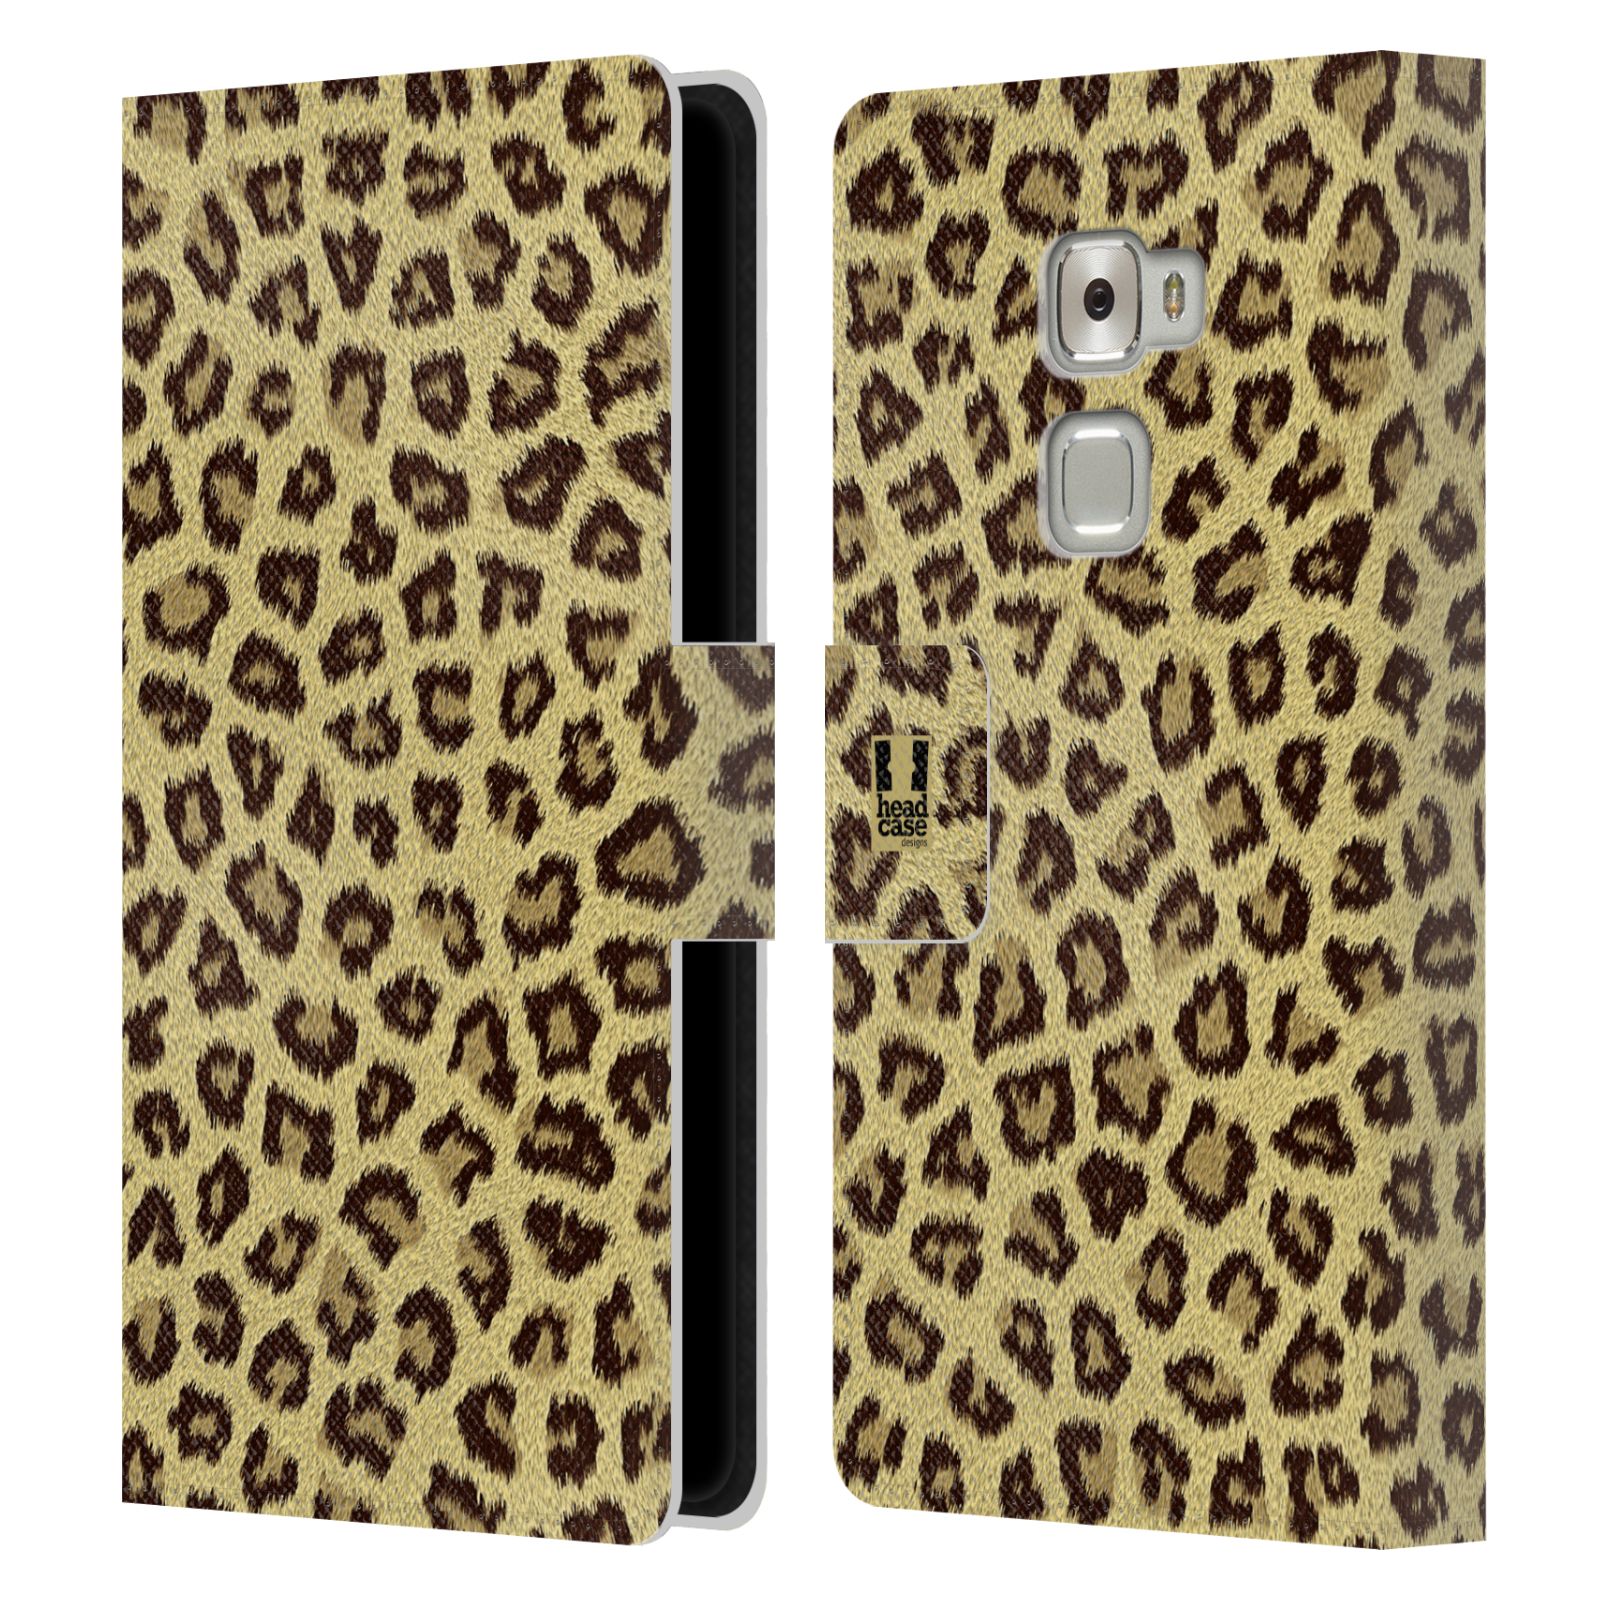 HEAD CASE Flipové pouzdro pro mobil Huawei MATE S zvíře srst divoká kolekce jaguár, gepard